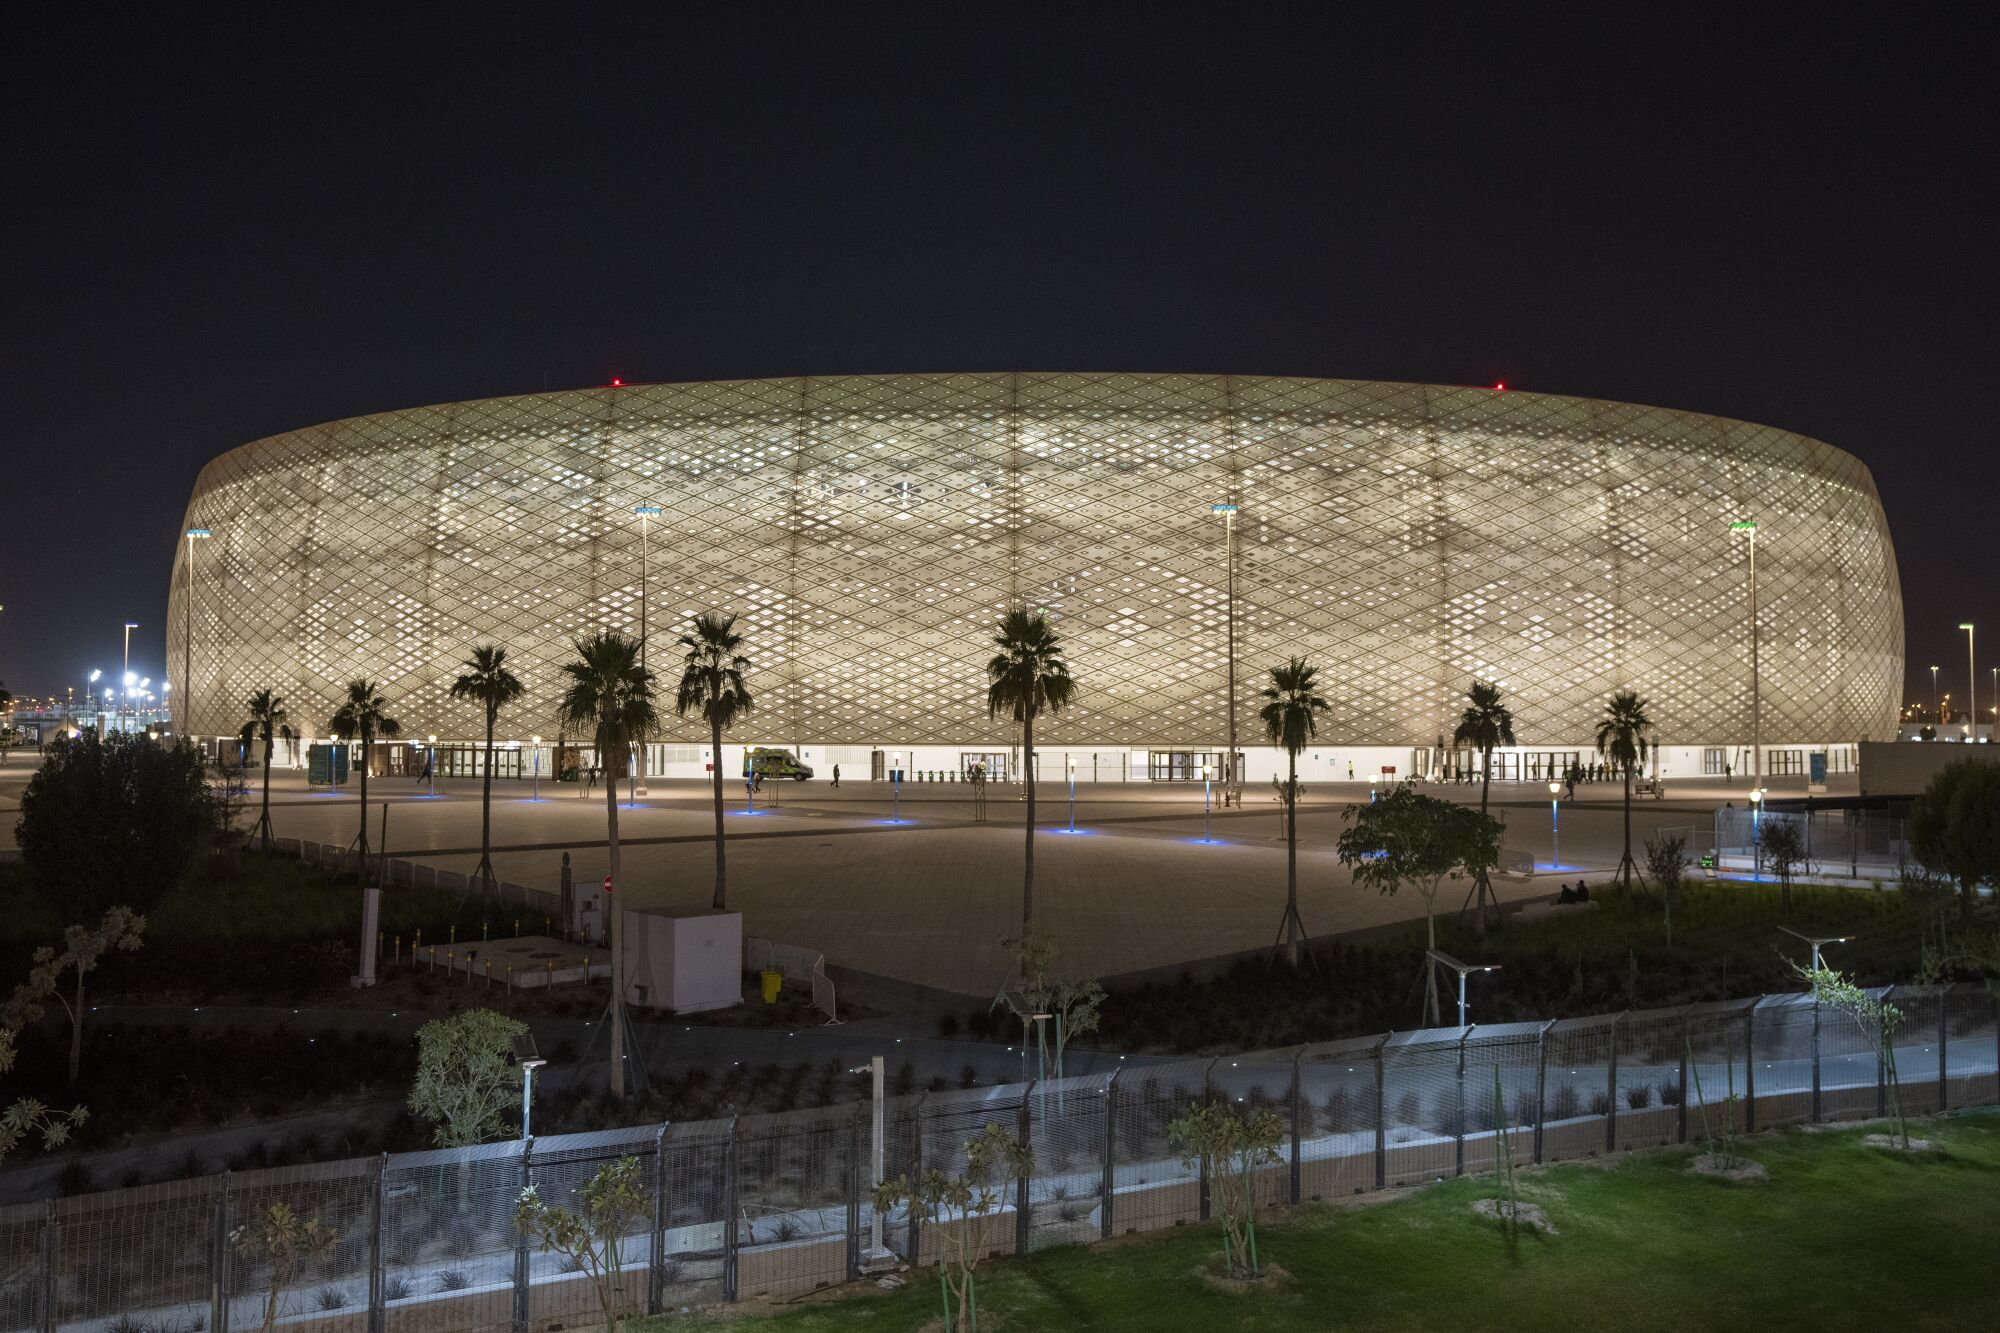 Al Thumama Stadium in Doha, Qatar.